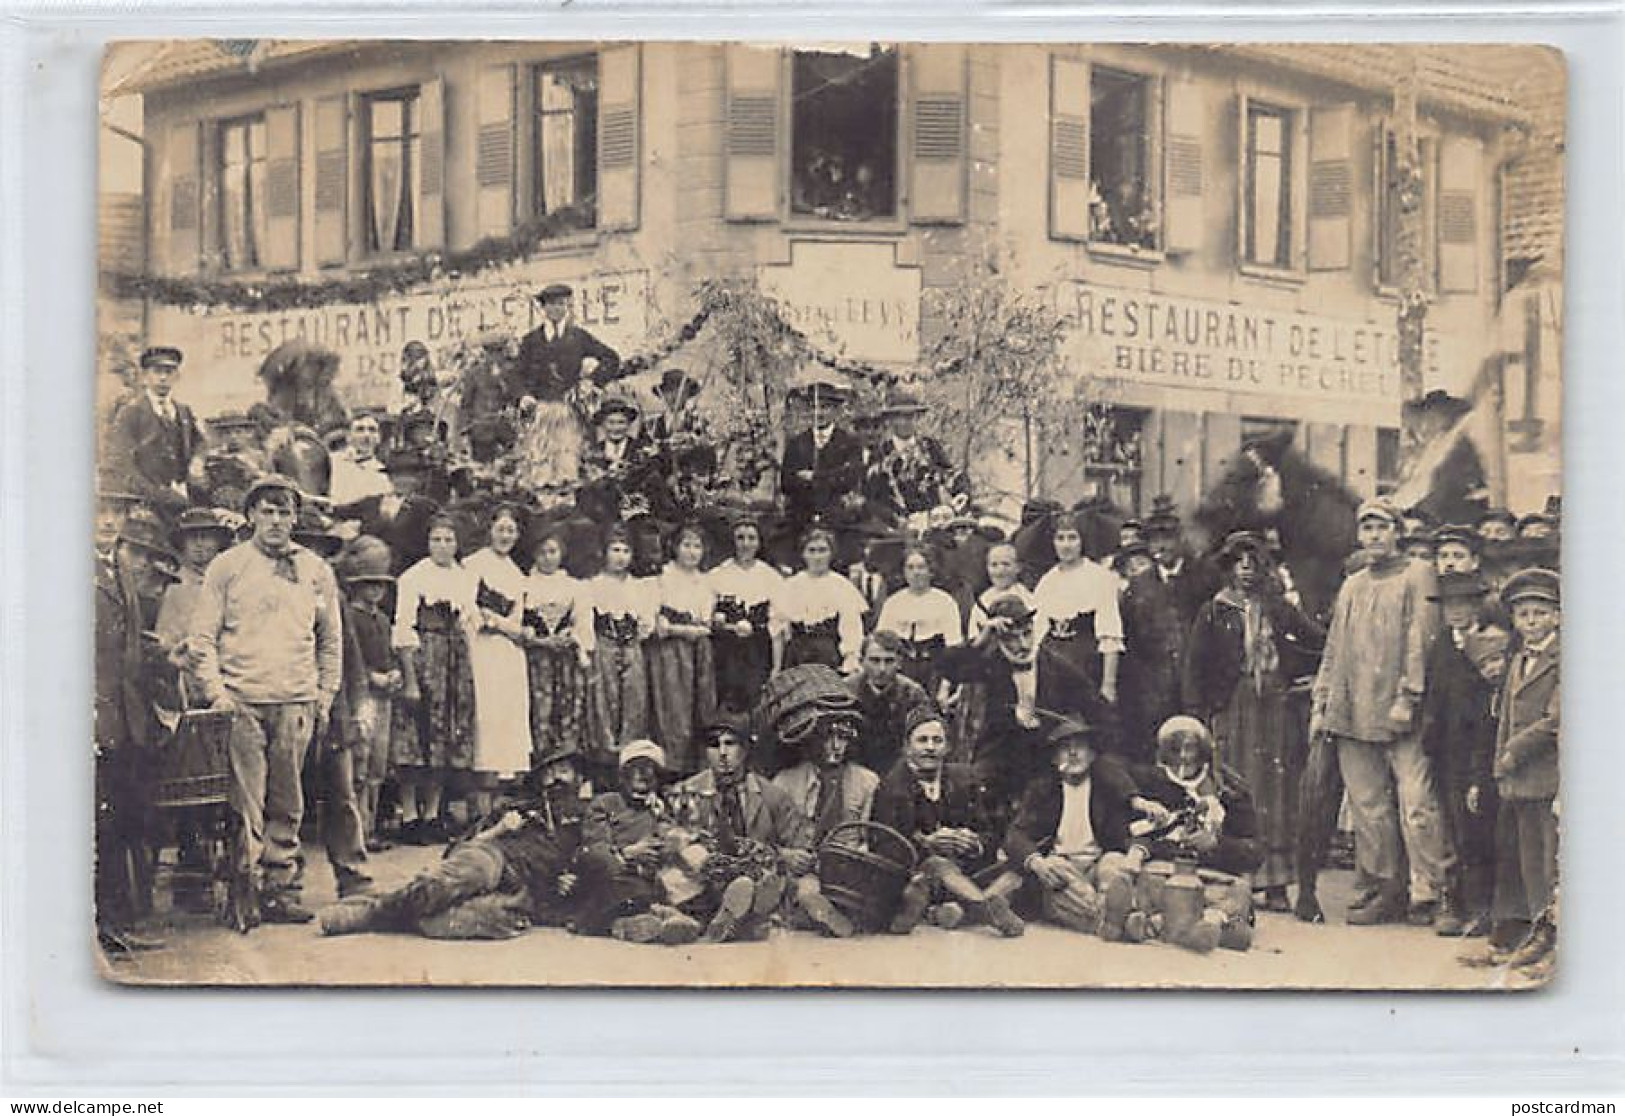 JUDAICA - France - QUATZENHEIM - Gustave Lévy, Restaurant De L'Etoile - CARTE PHOTO Datée Du 31 Octobre 1919 - Ed. Photo - Judaisme